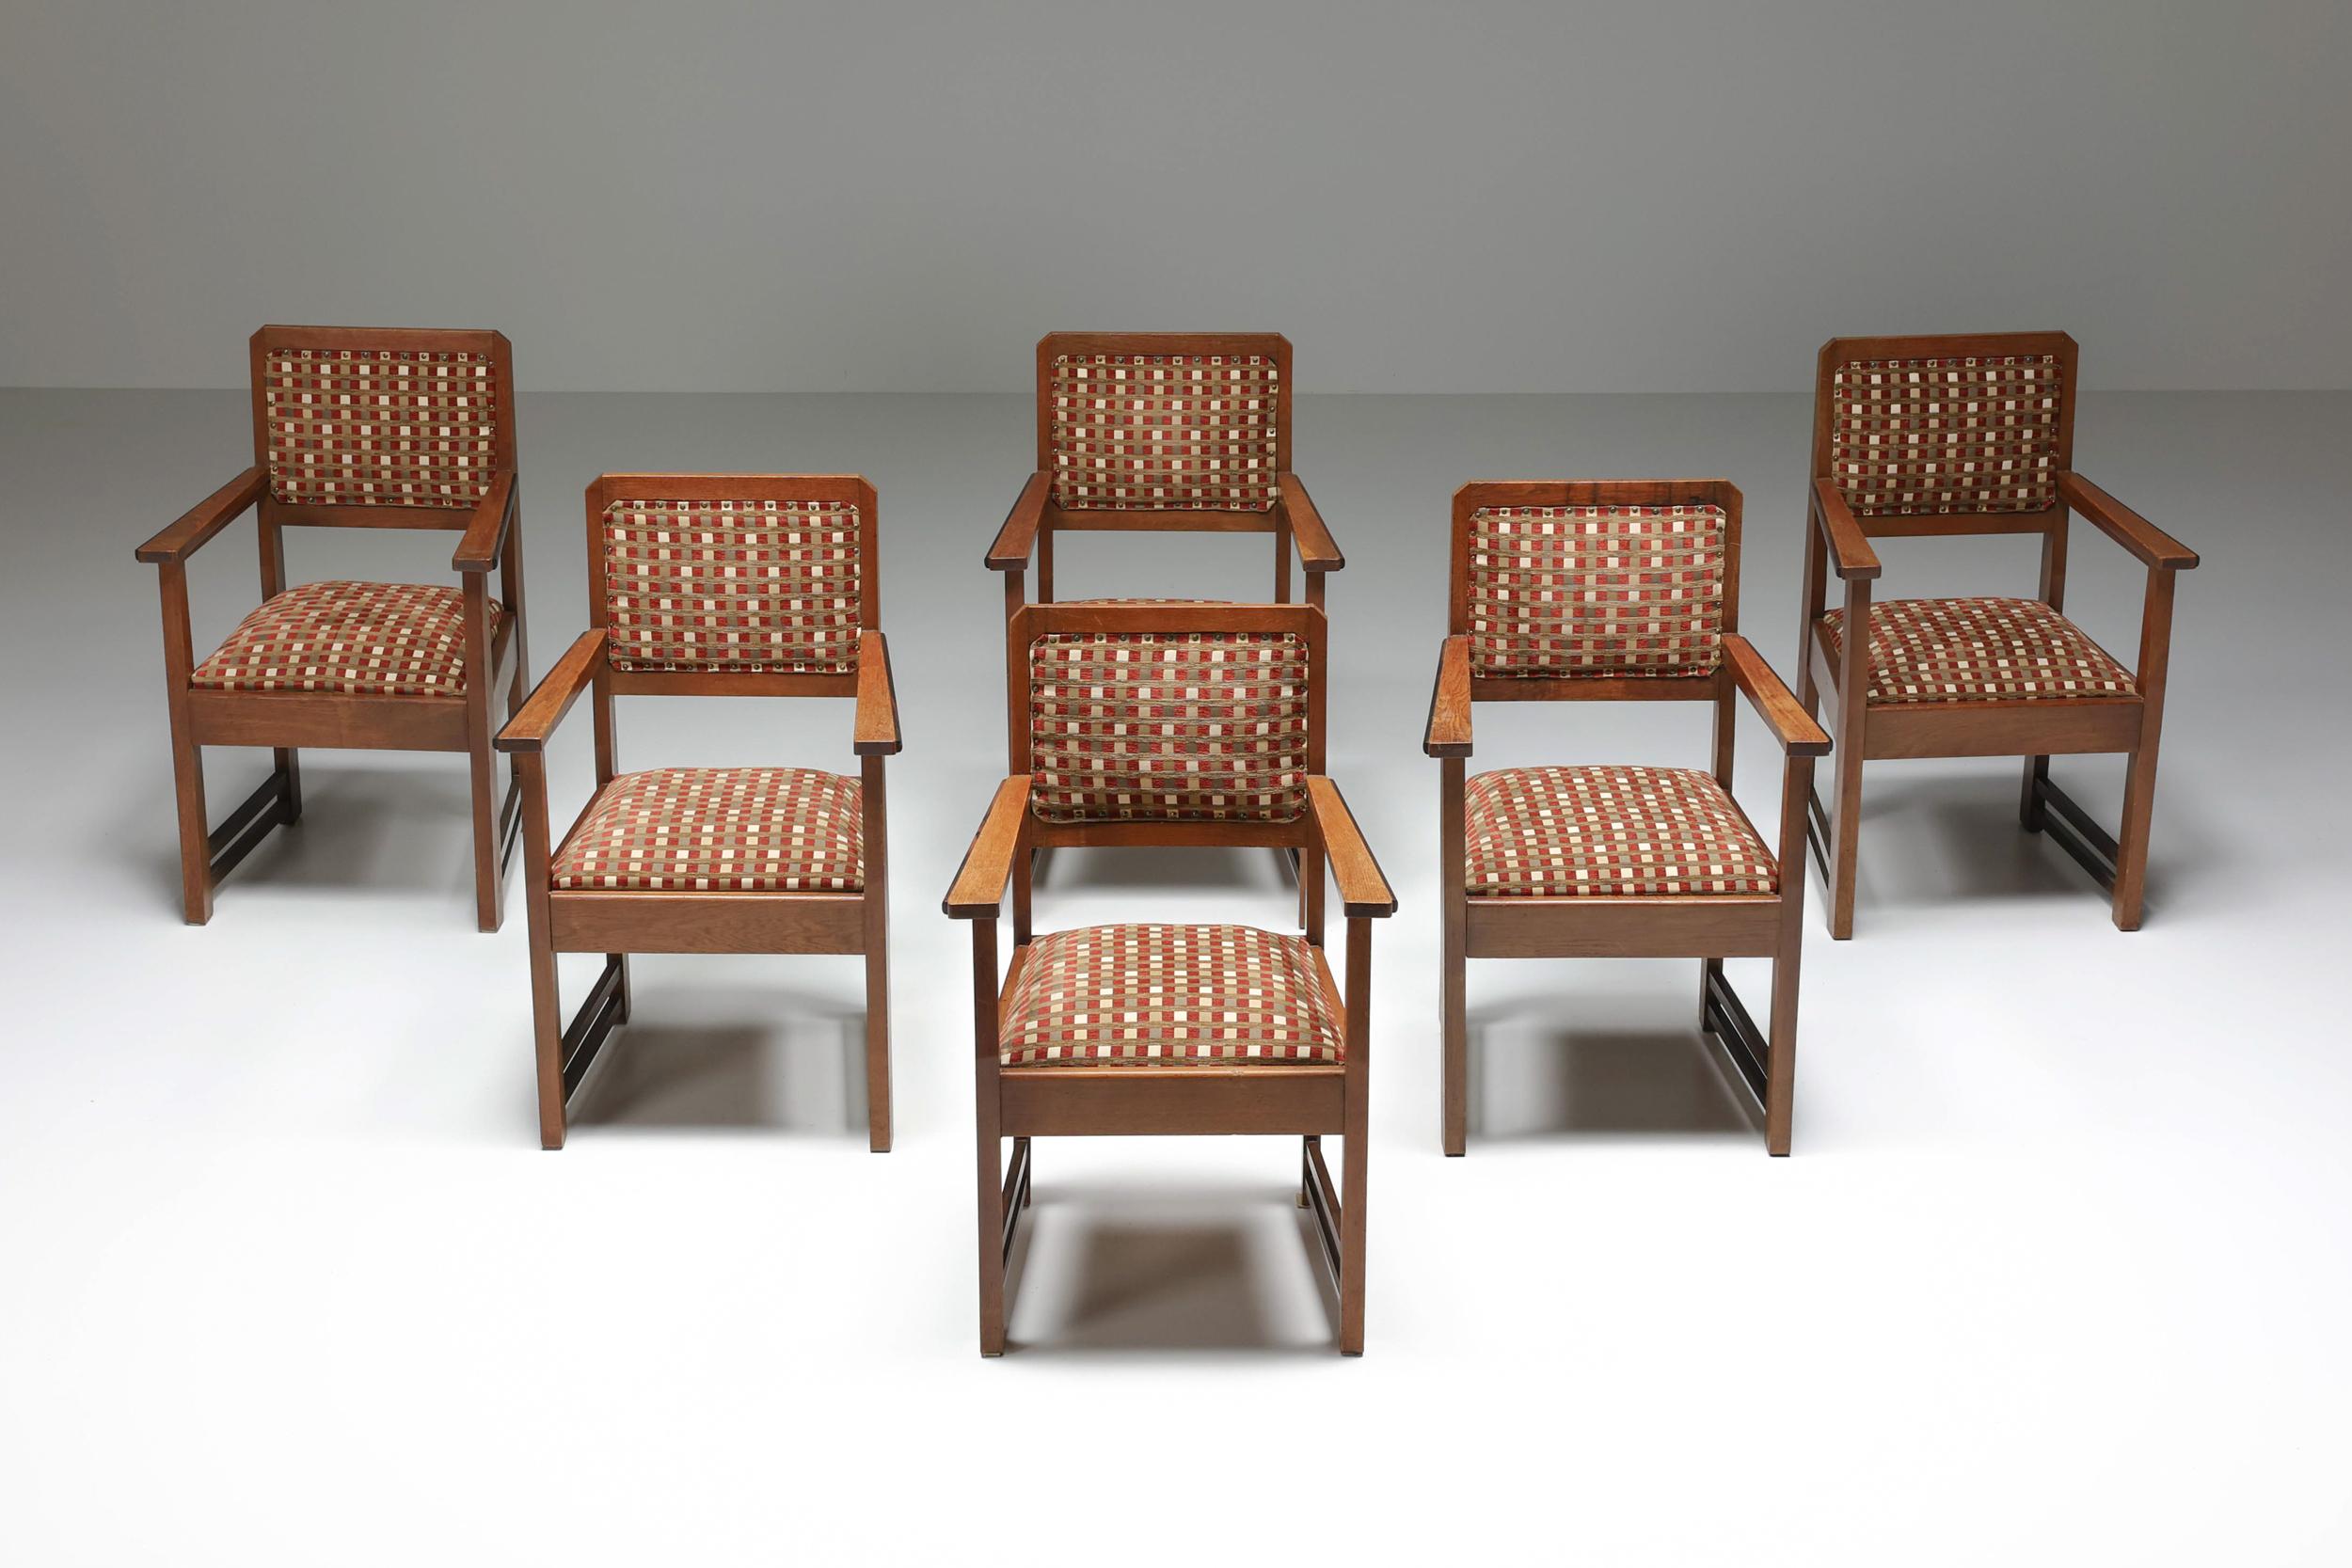 1940er Jahre, Dutch Modern, Lounge Chair, Amsterdamse school, Sessel, Art Deco, Expressionismus, Jugendstil. 

Niederländische moderne Satz von sechs Stühlen der Amsterdamse Schule. Die Originalpolsterung sorgt für eine authentische Qualität. Die